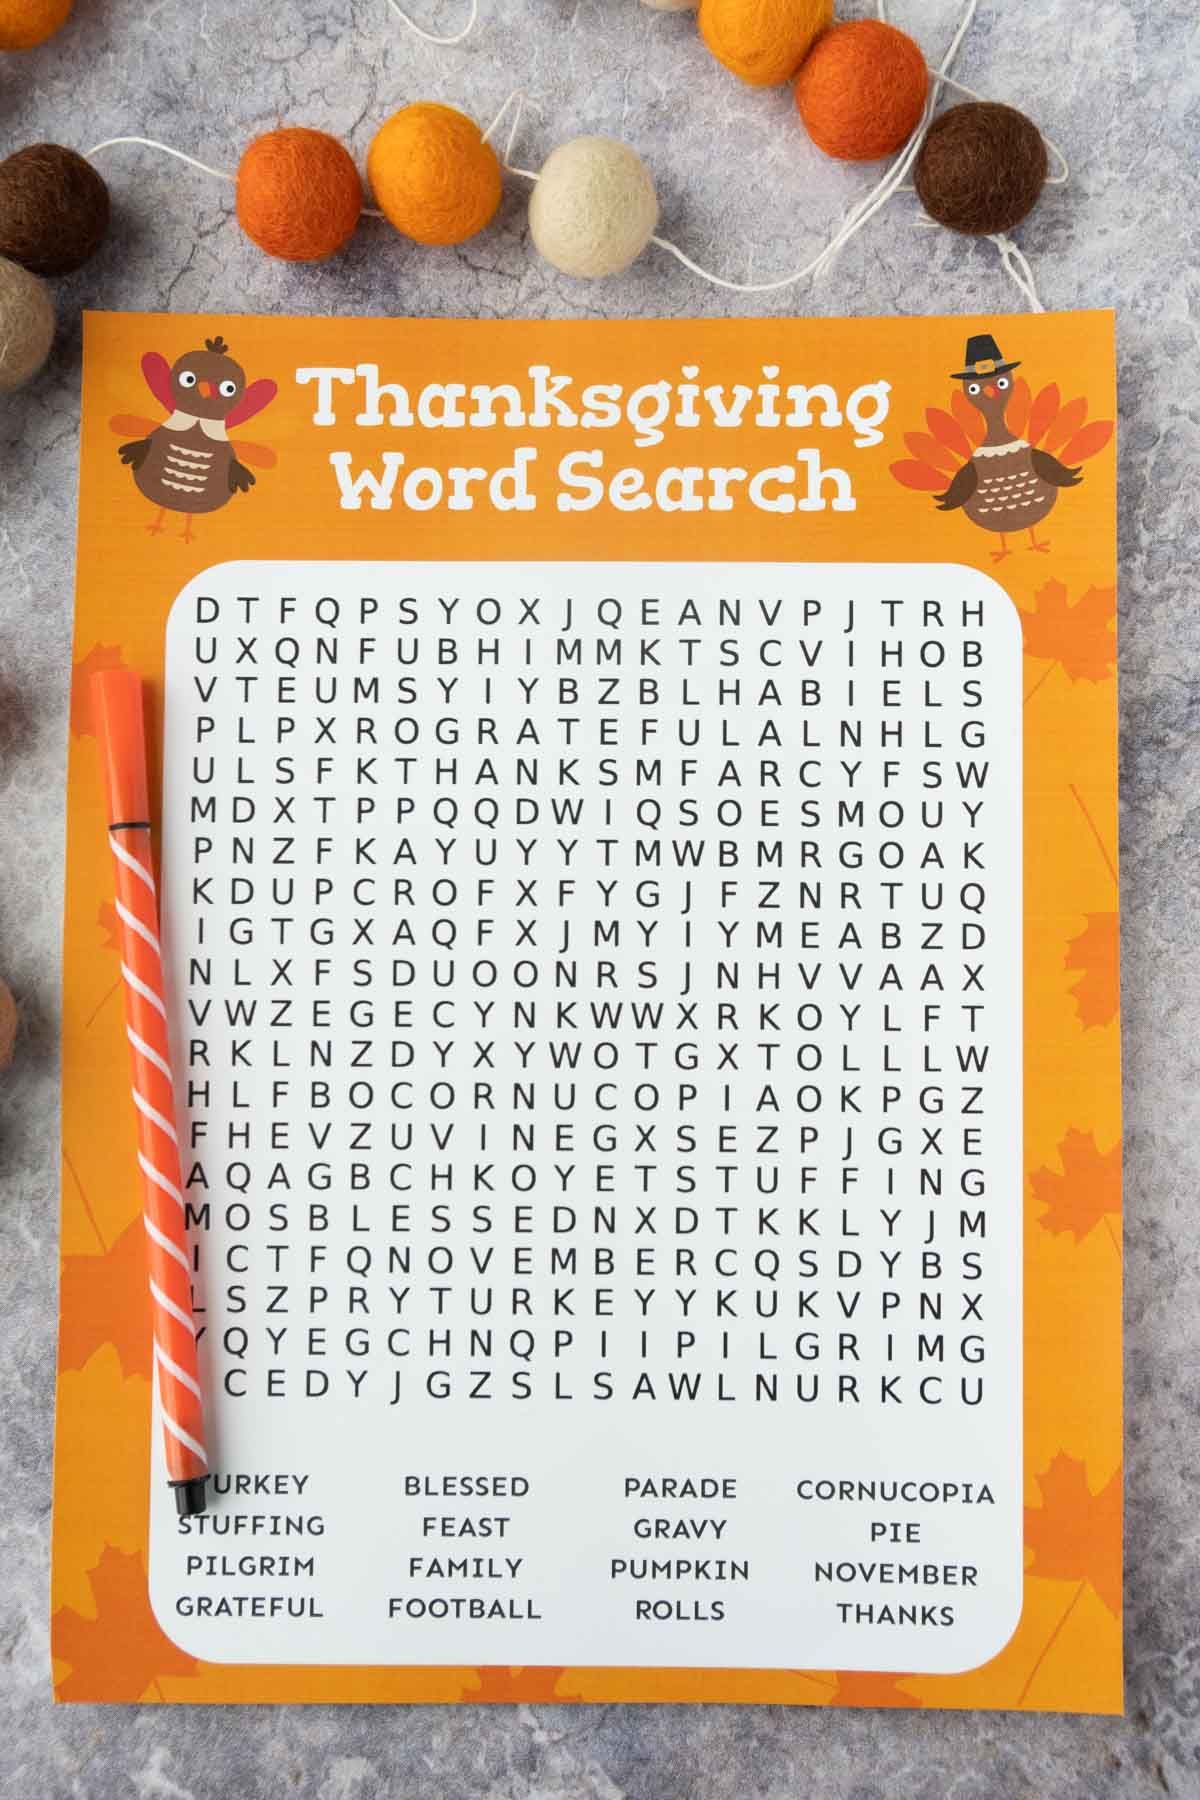 Utskrift av Thanksgiving-ordsökning med en penna och filtbollkrans